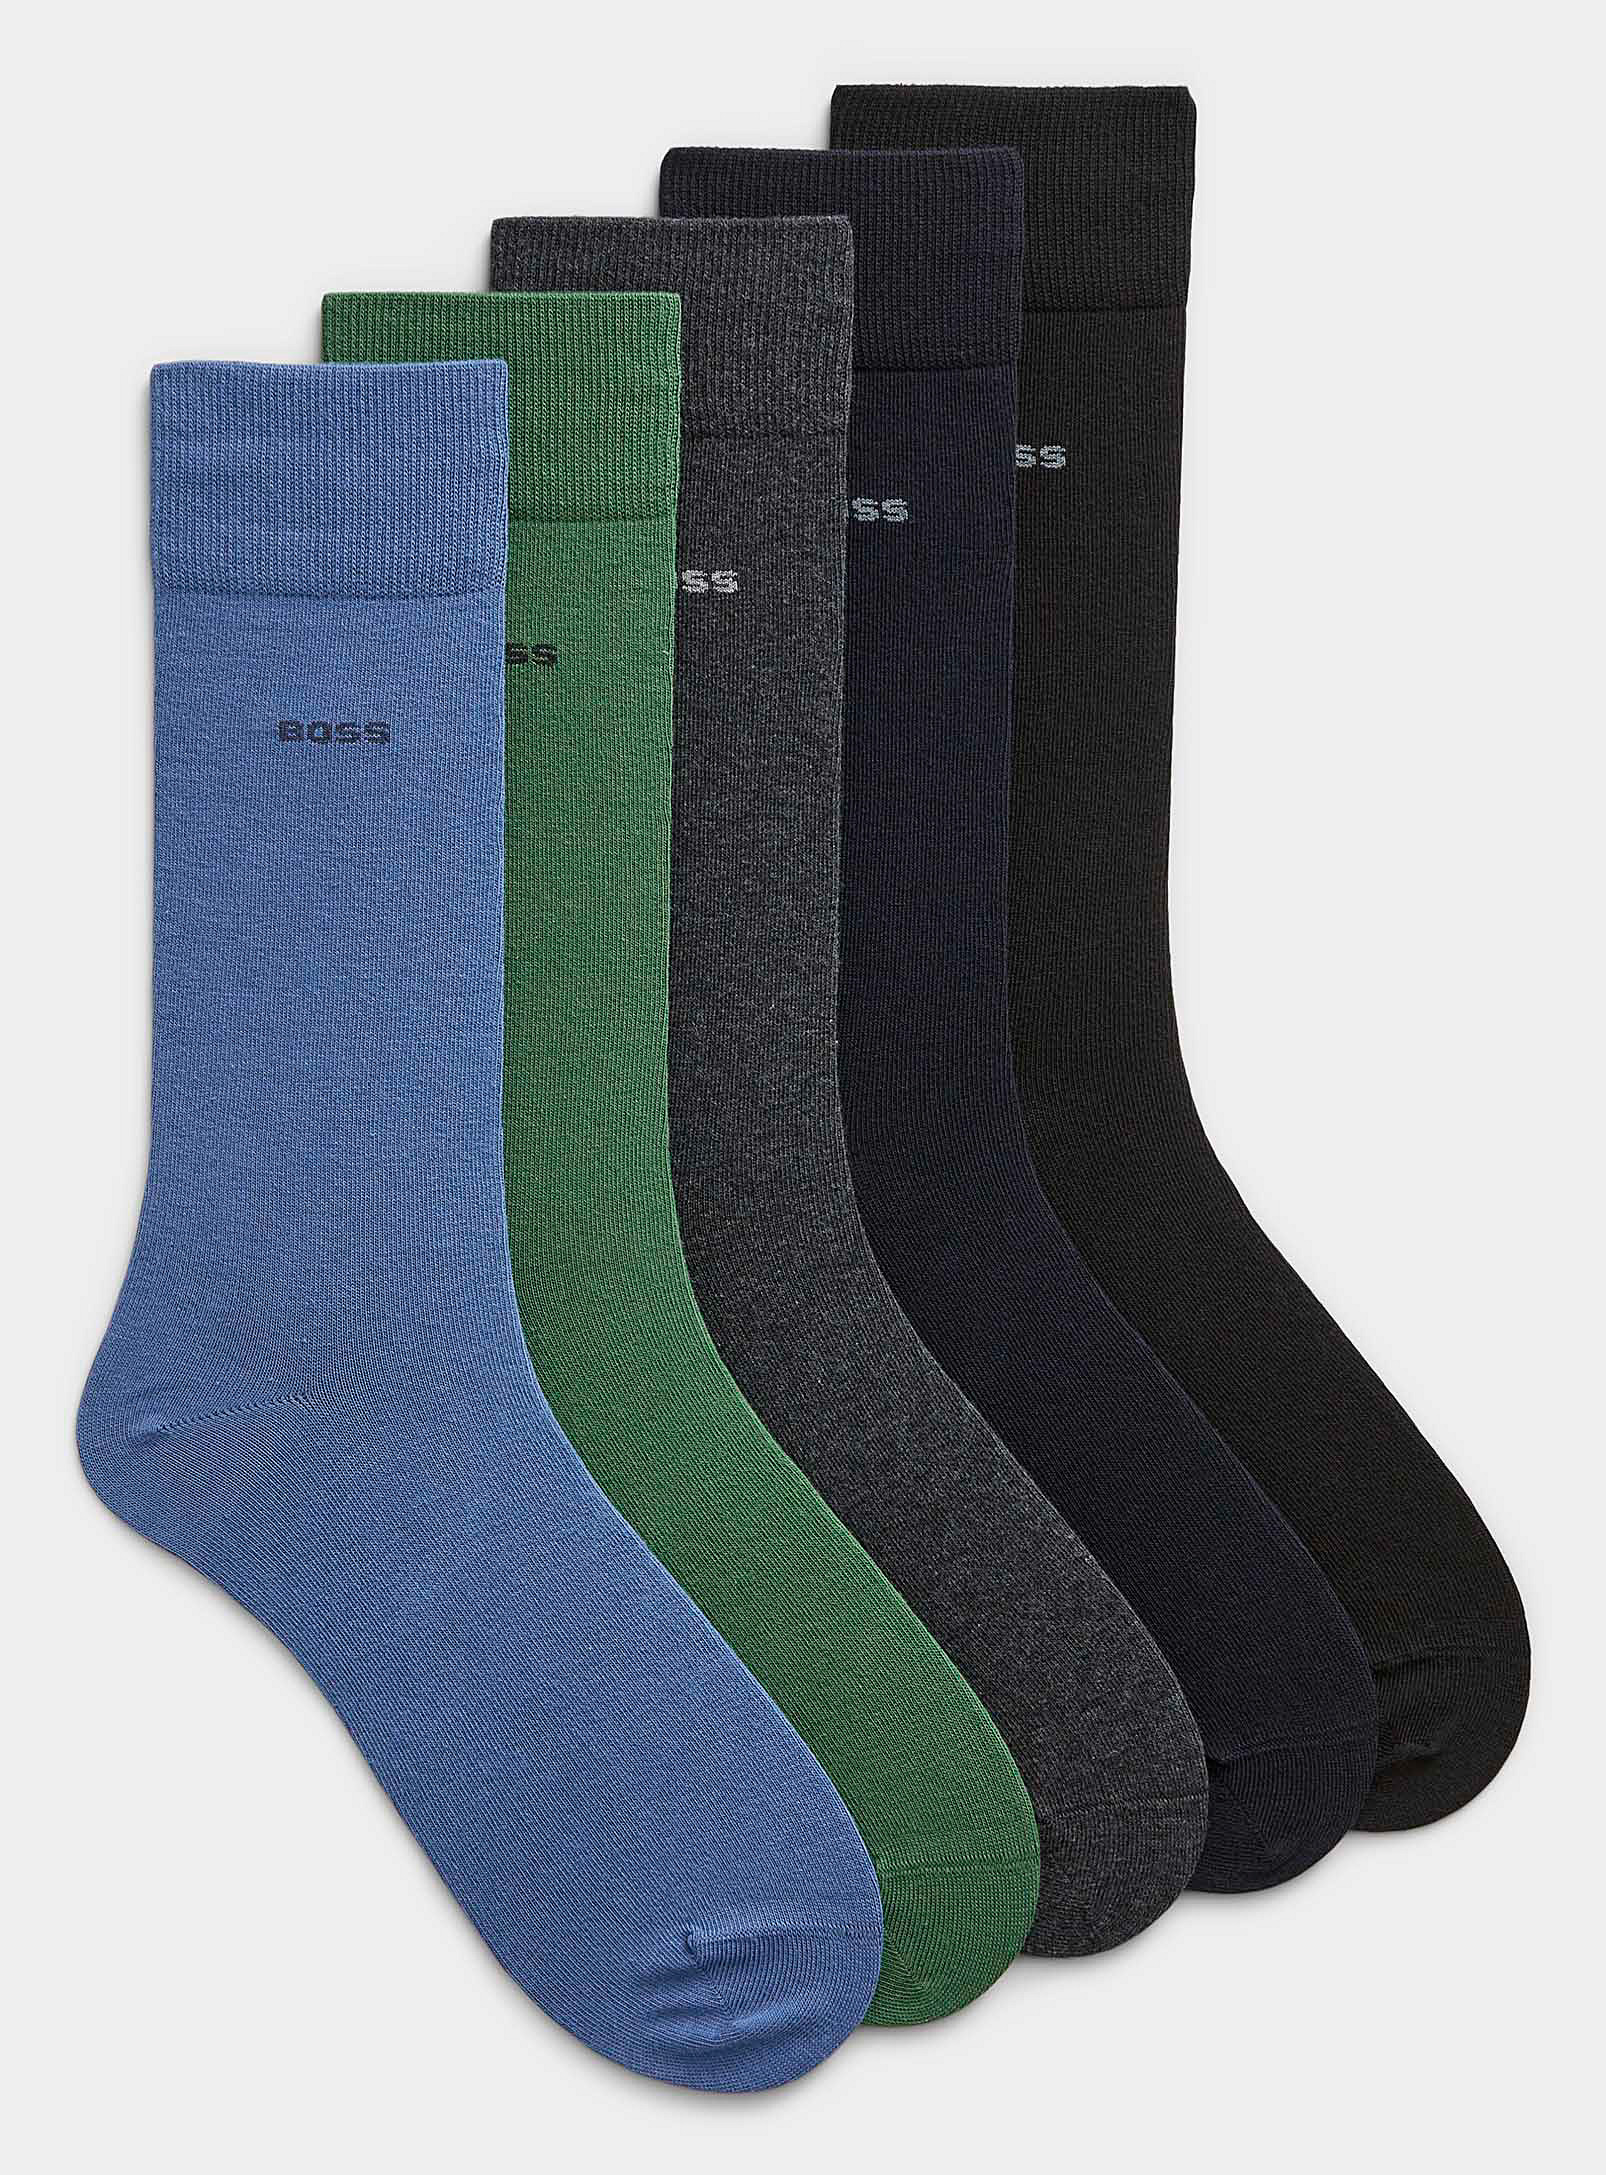 Hugo Boss Solid Dress Socks 5-pack In Multi